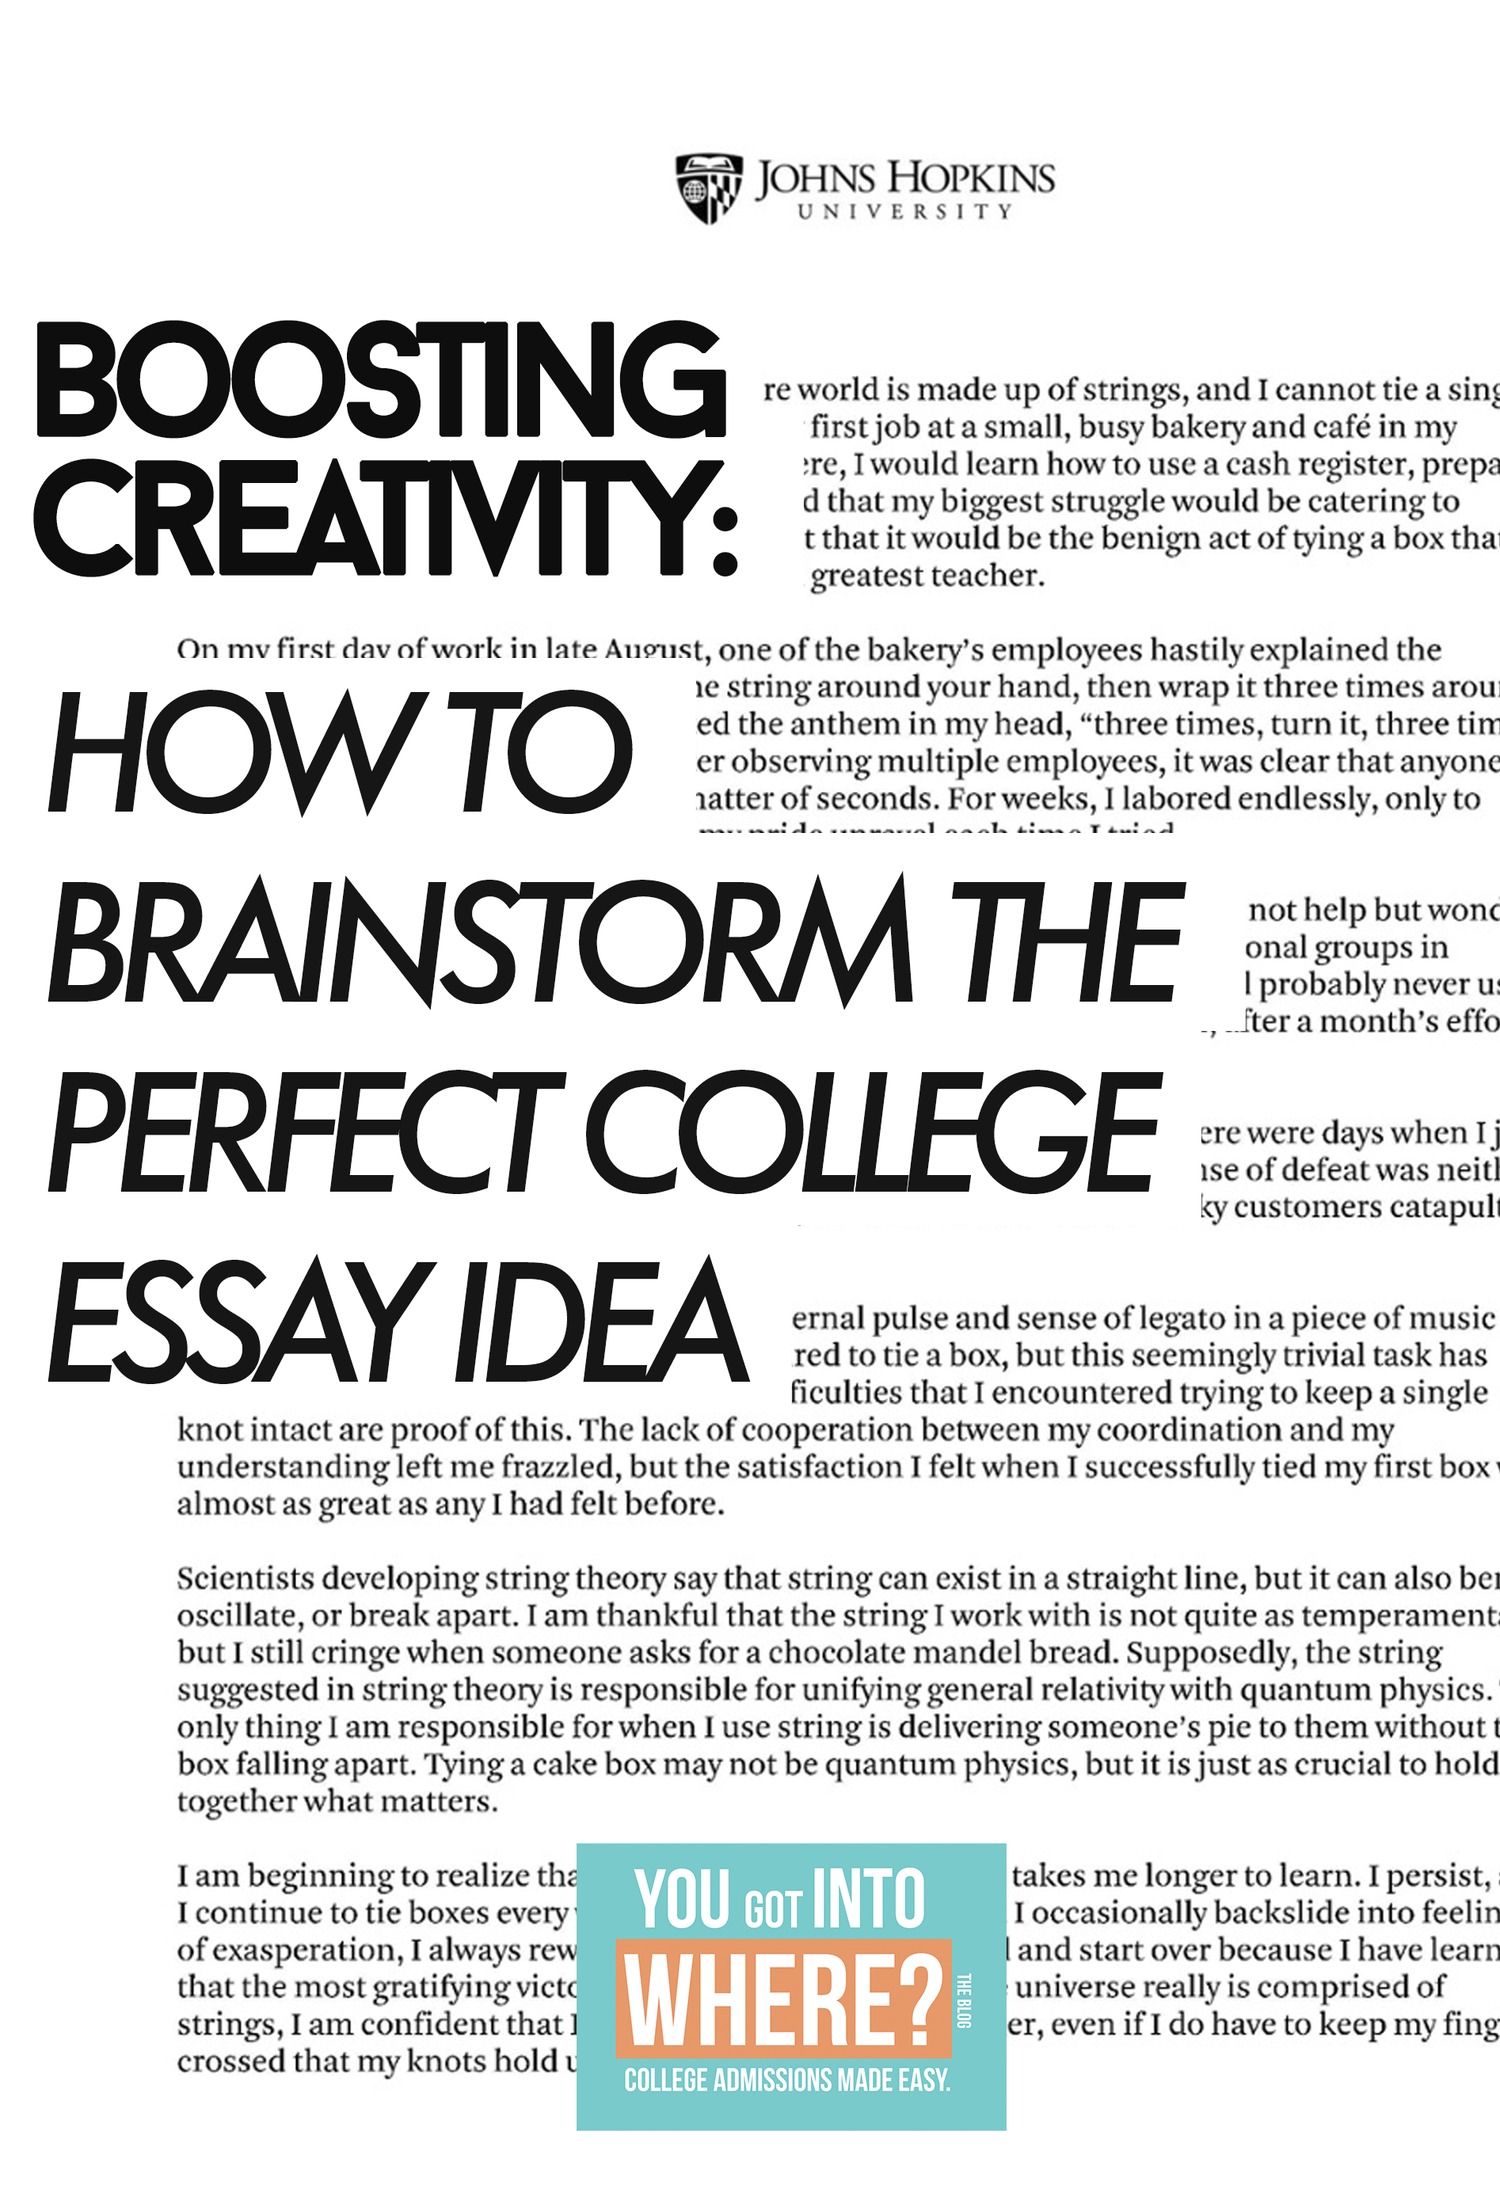 brainstorming college essays